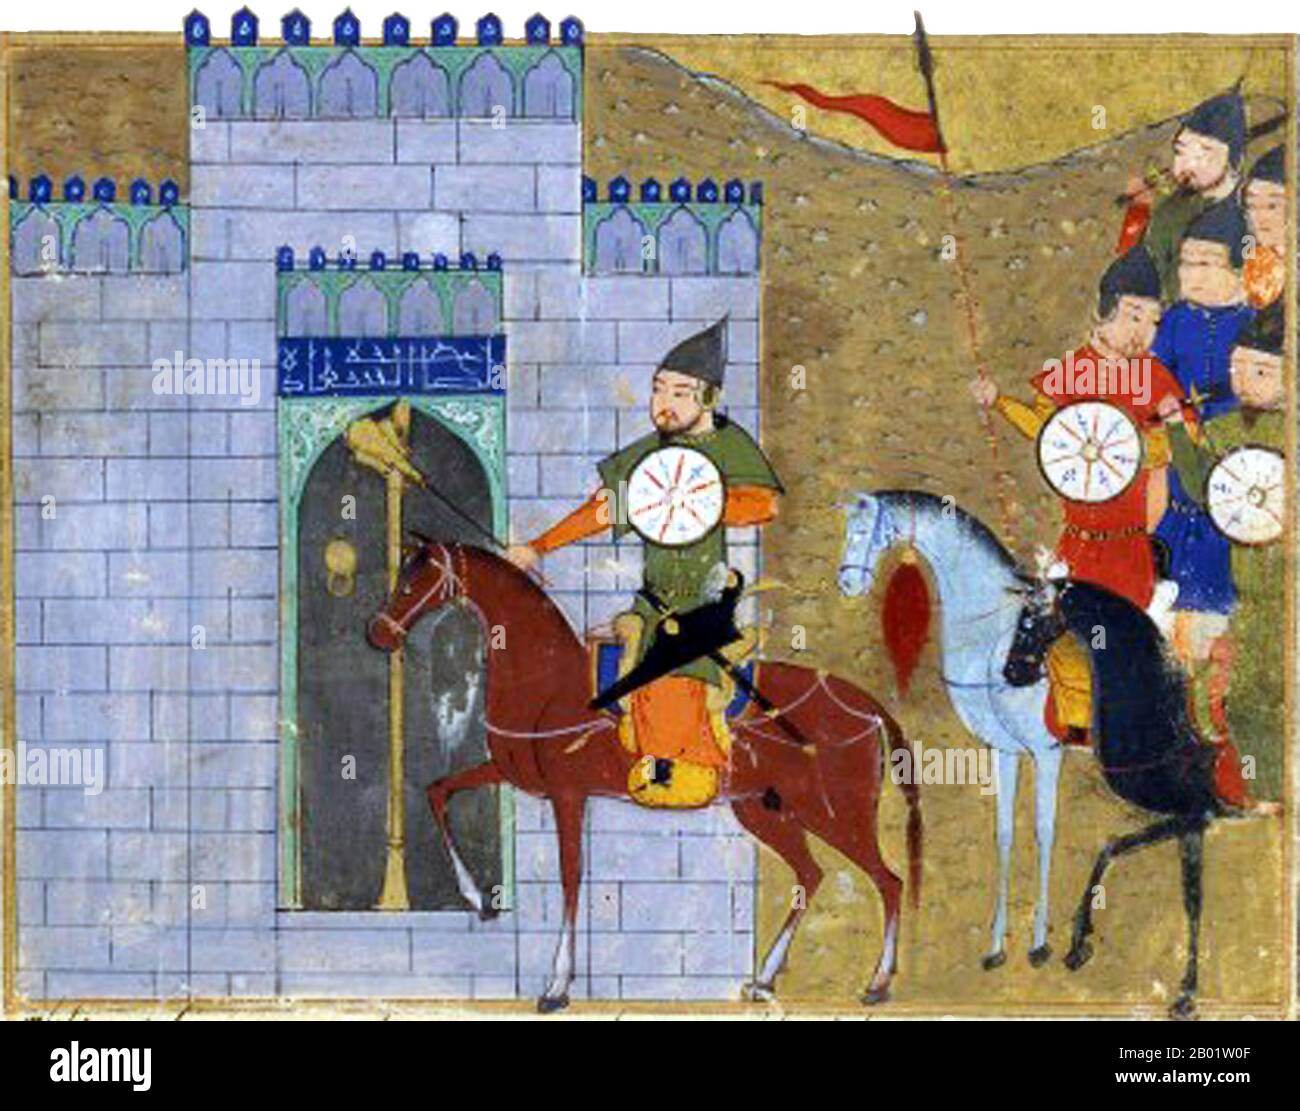 Iran/Persien/Mongolei: Belagerung Pekings (1213-1214). Miniaturmalerei aus Rashid al-Dins Jami al-Tawarikh, um 1305. Das Jāmi’ al-tawārīkh („Kompendium der Chroniken“) ist ein iranisches Literatur- und Geschichtswerk, das Rashid-al-DIN Hamadani zu Beginn des 14. Jahrhunderts geschrieben hat. Stockfoto